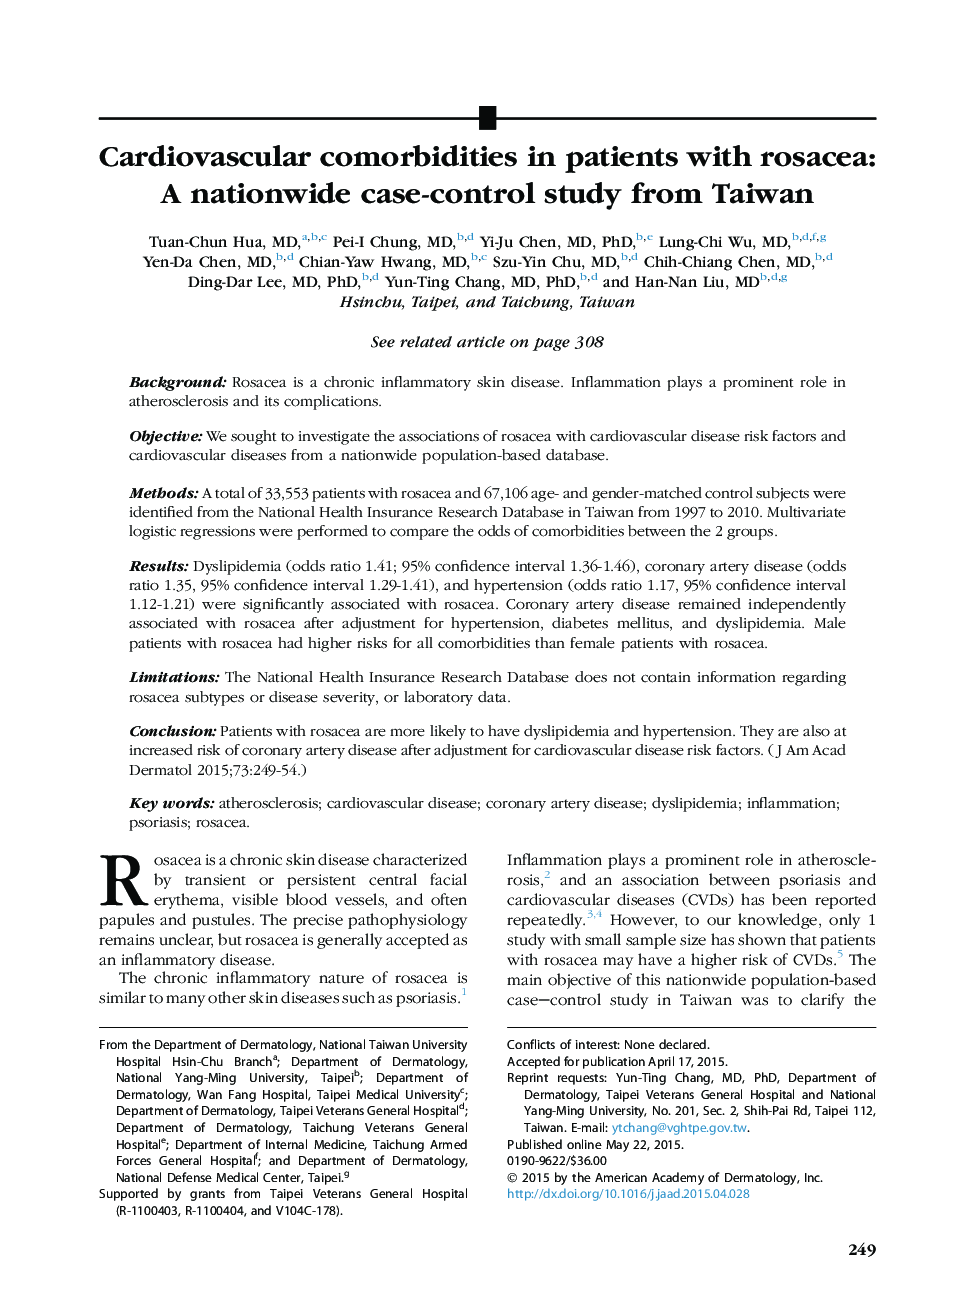 مقاله اصلی بیماری های مرتبط با قلب و عروق در بیماران مبتلا به روده ای: یک مطالعه مورد کنترل در سراسر کشور از تایوان 